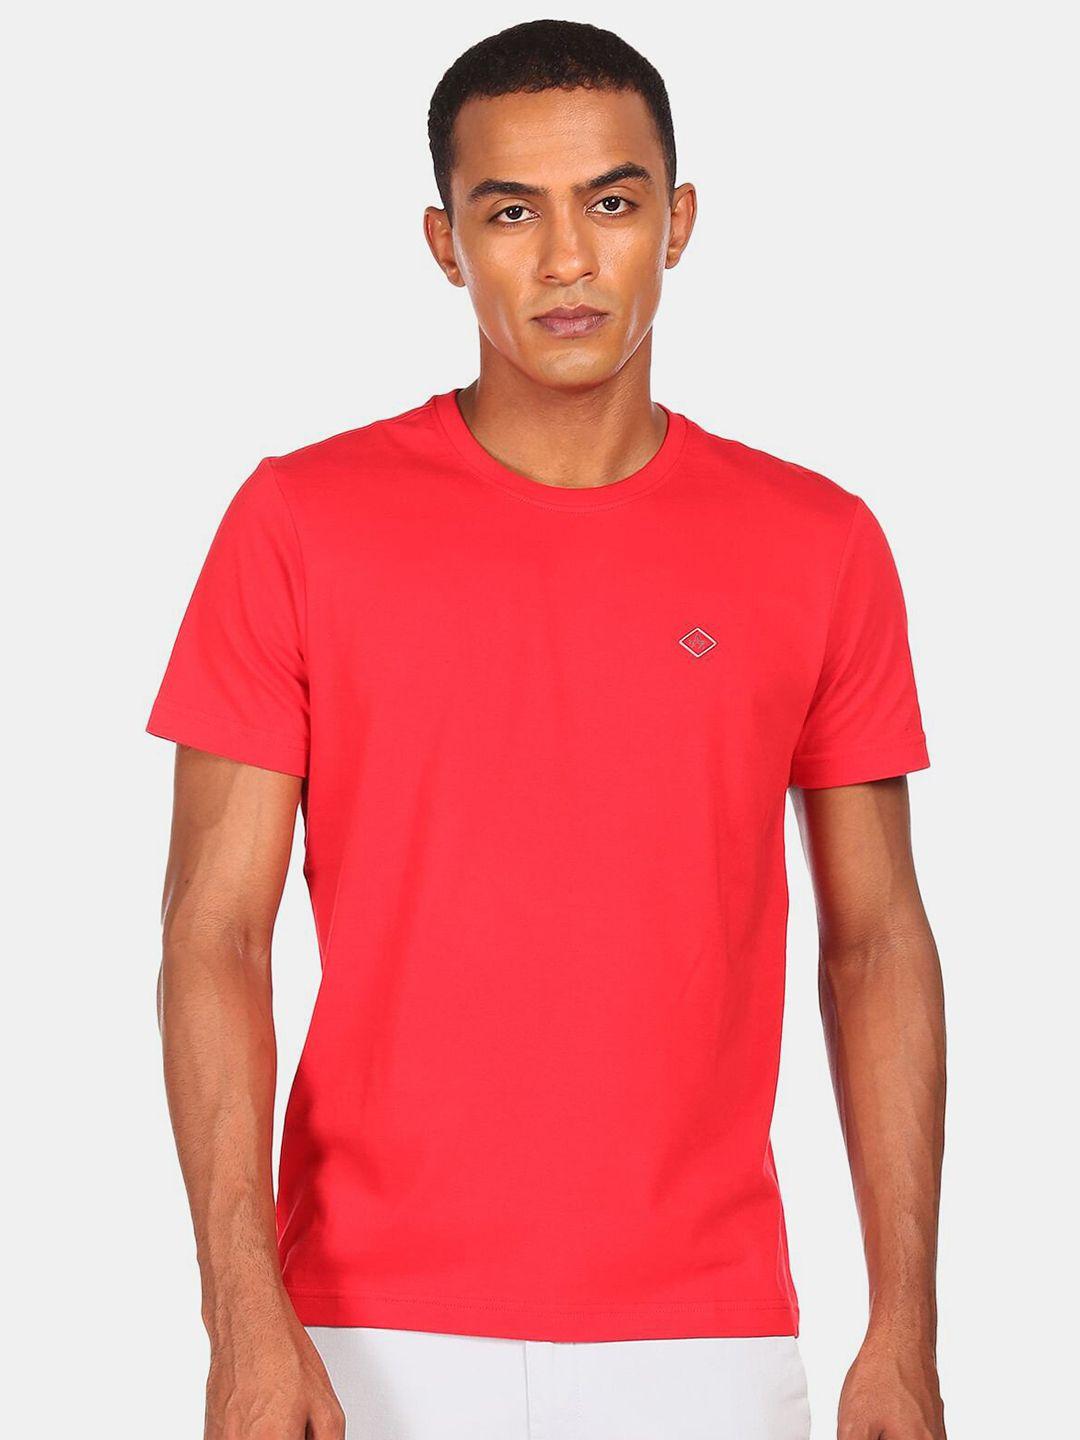 arrow sport men red t-shirt